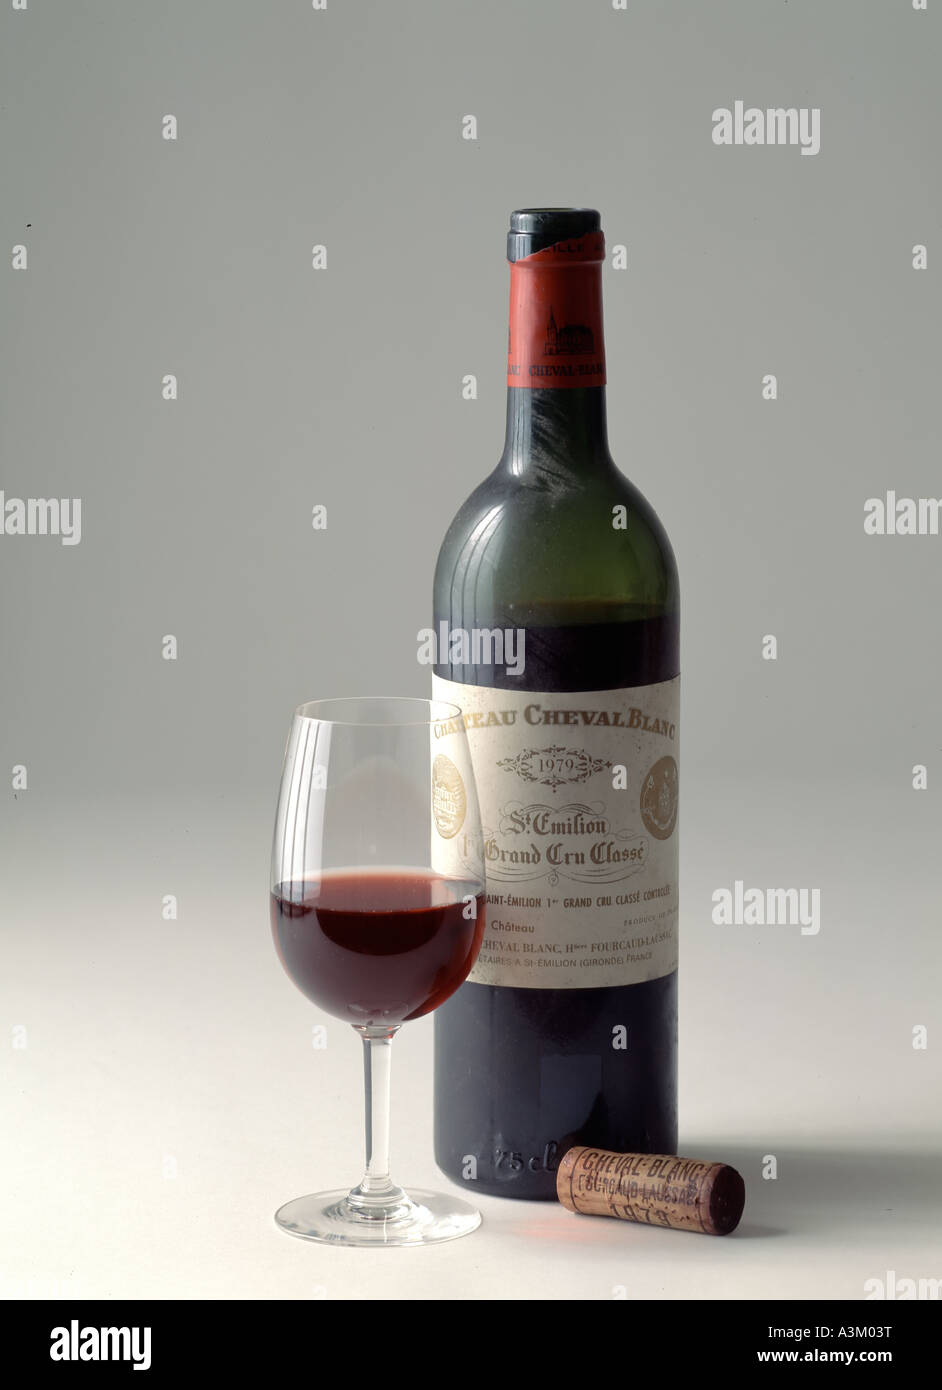 1975 Château Cheval Blanc, St. Emilion (magnum) – Wine Consigners Inc.